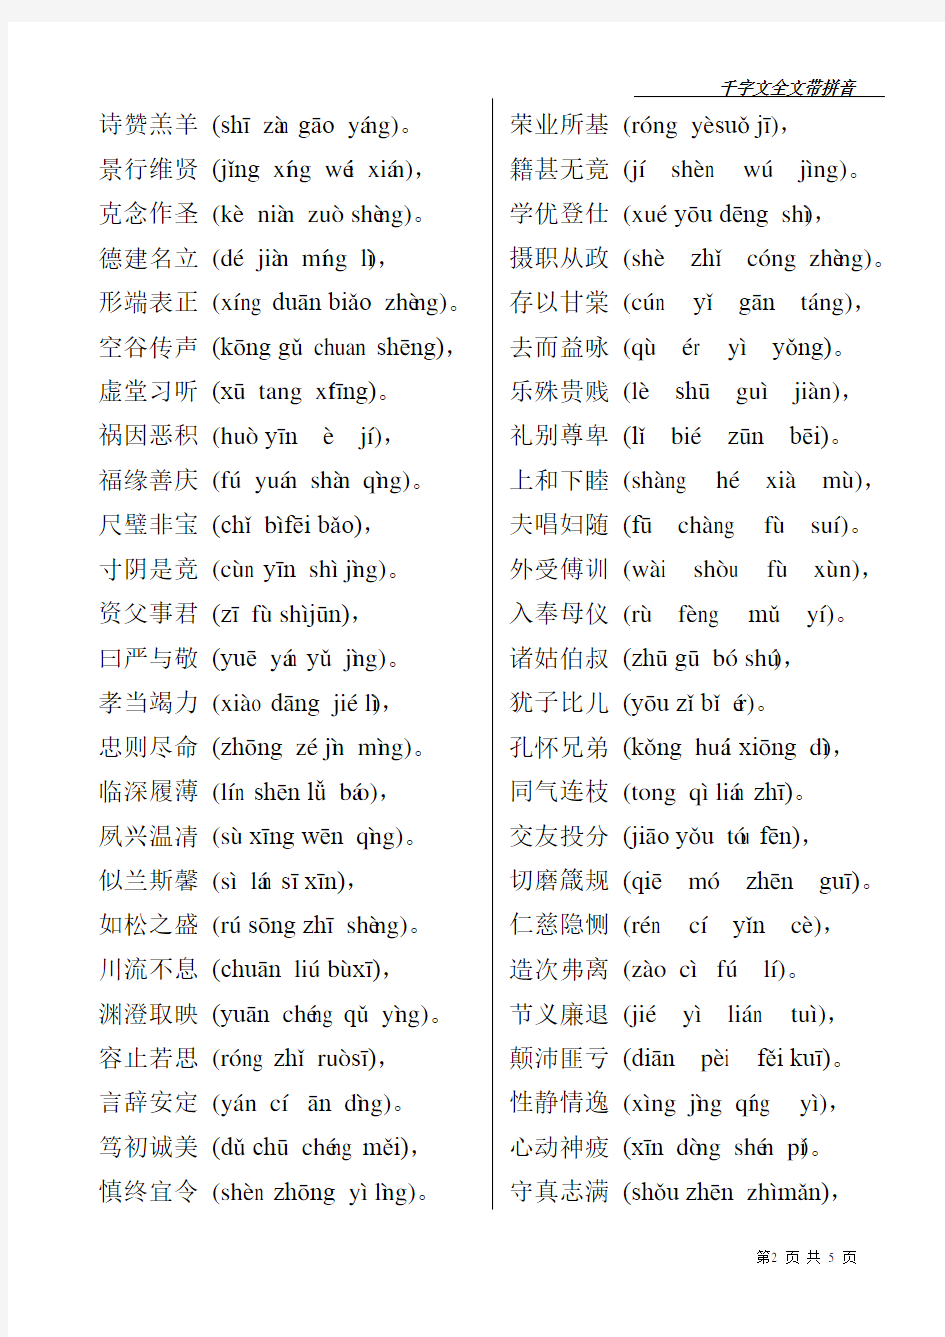 千字文全文带拼音(打印版) (3)